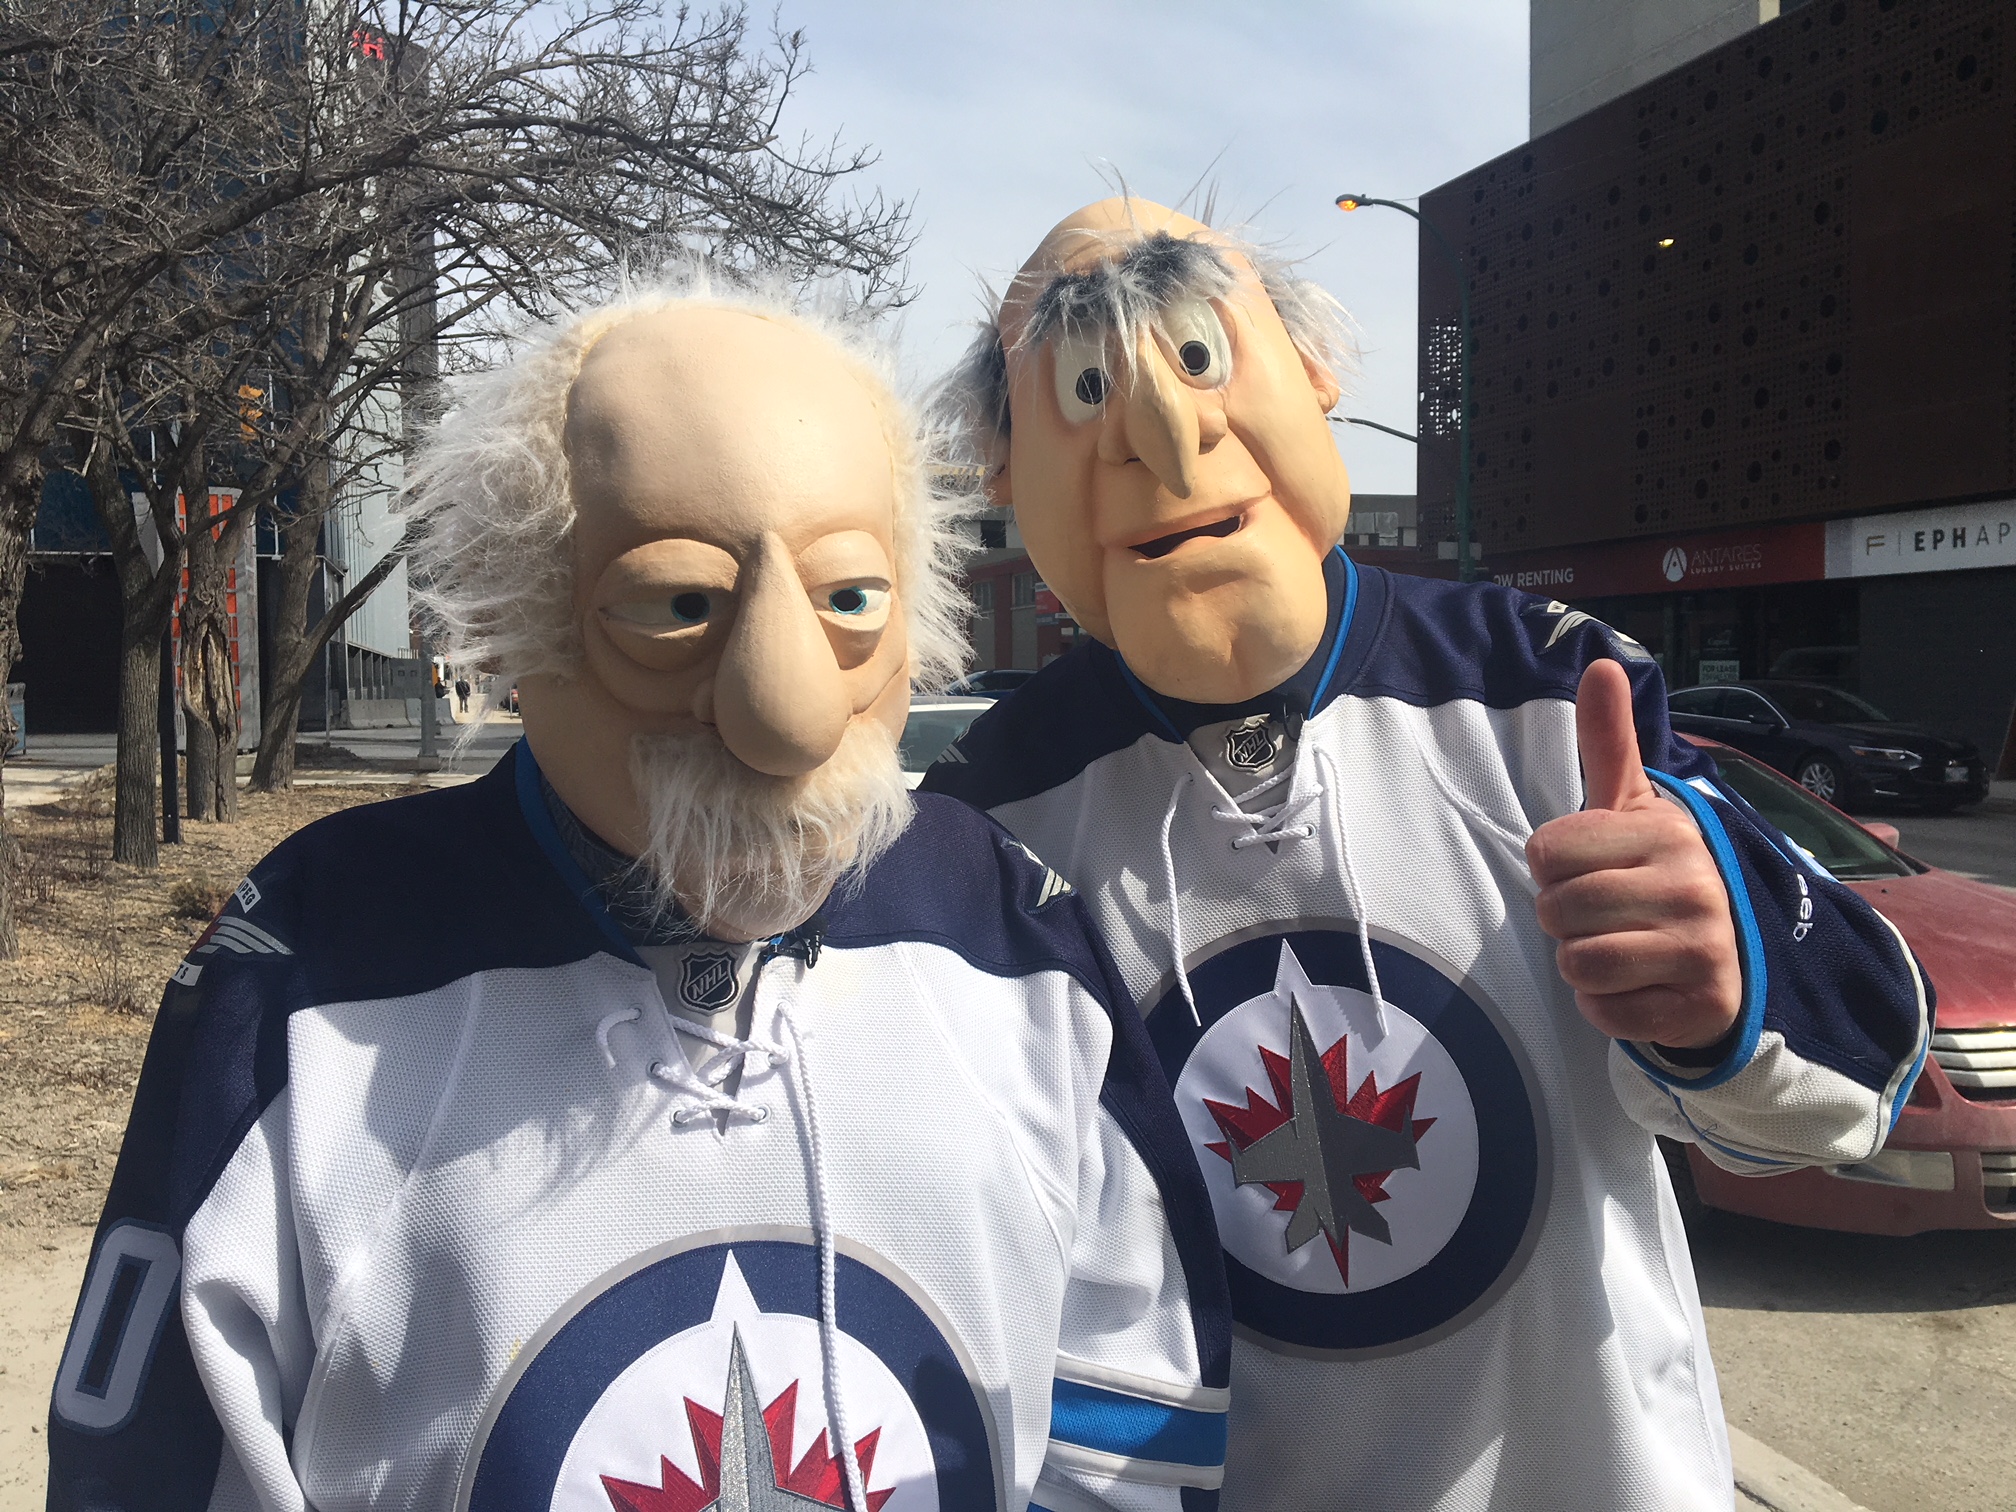 Questo duo Winnipeg sono stati vestirsi come personaggi Muppet Statler e Waldorf per alcuni anni.